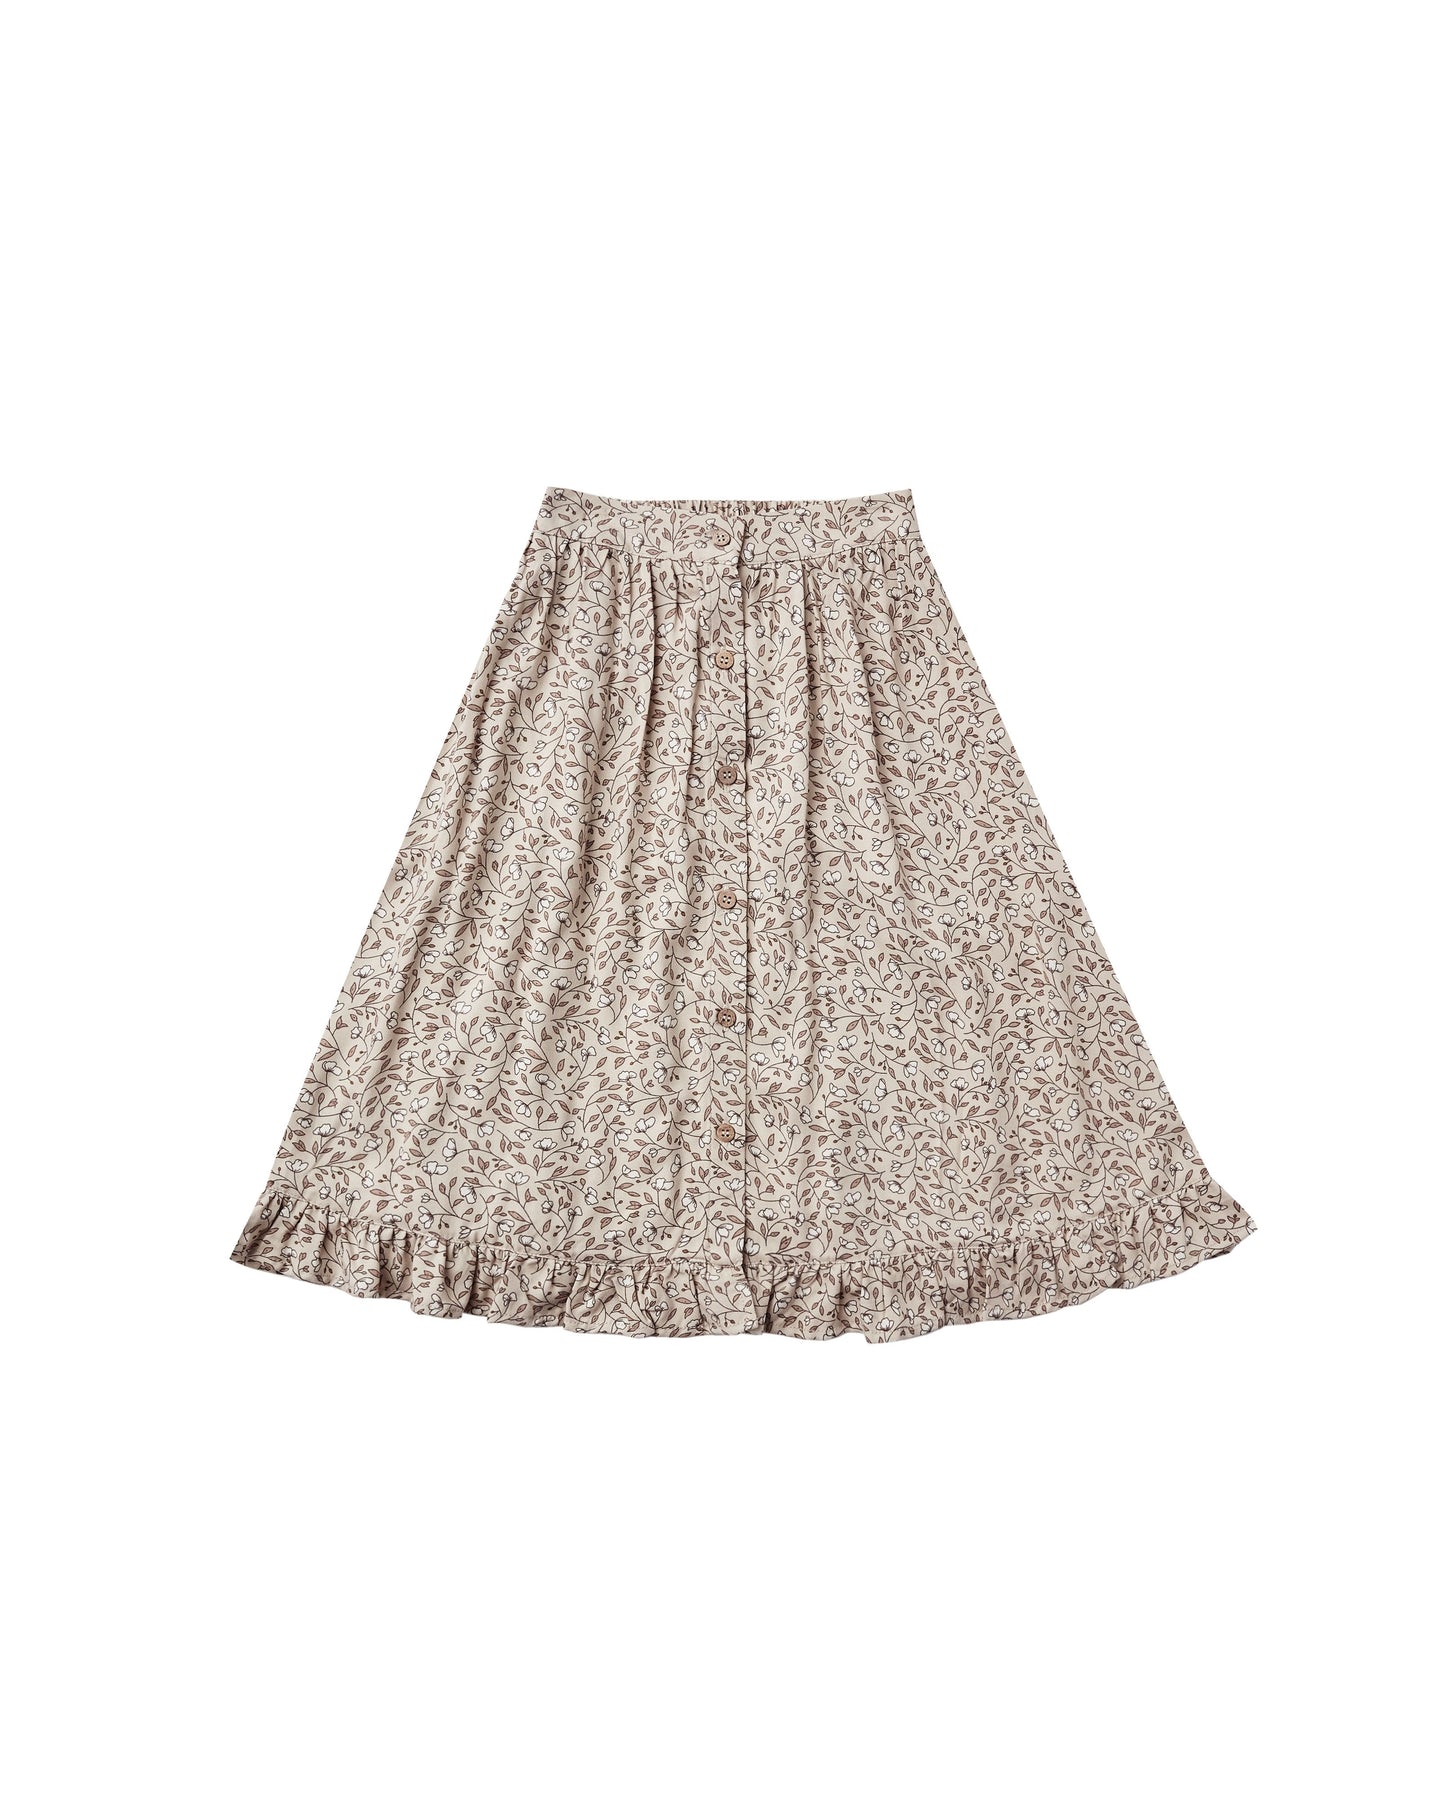 Rylee + Cru - Magnolia Oceanside Skirt - Stone